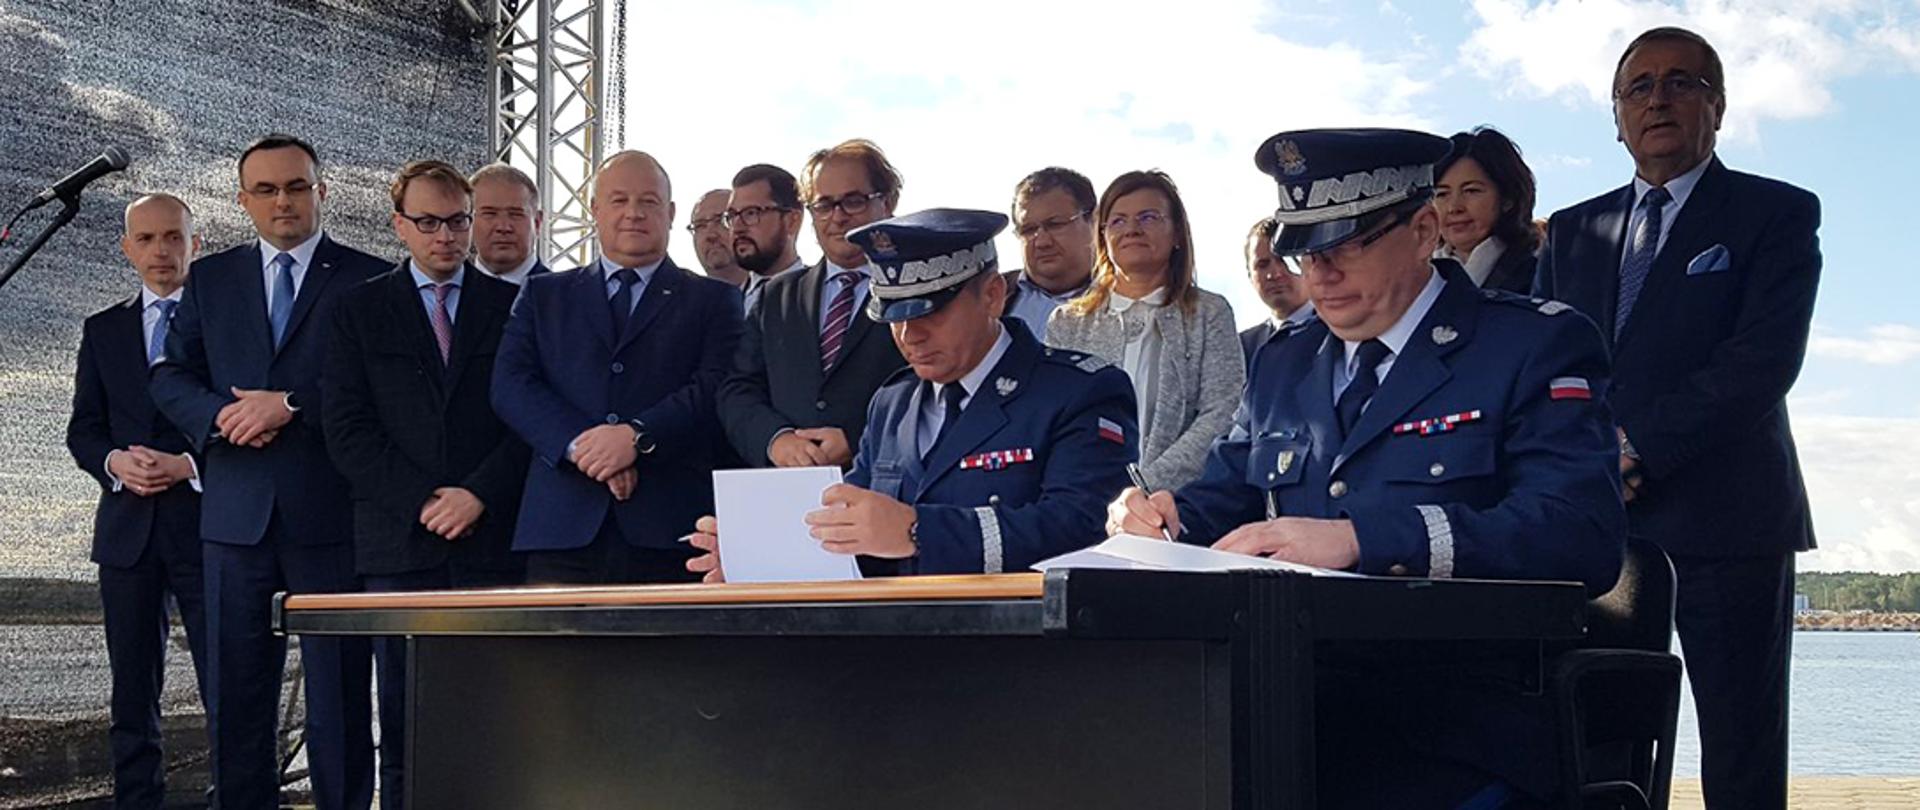 Zastępca Komendanta Głównego Policji oraz Komendant Wojewódzki Policji podpisujący akt porozumienia.